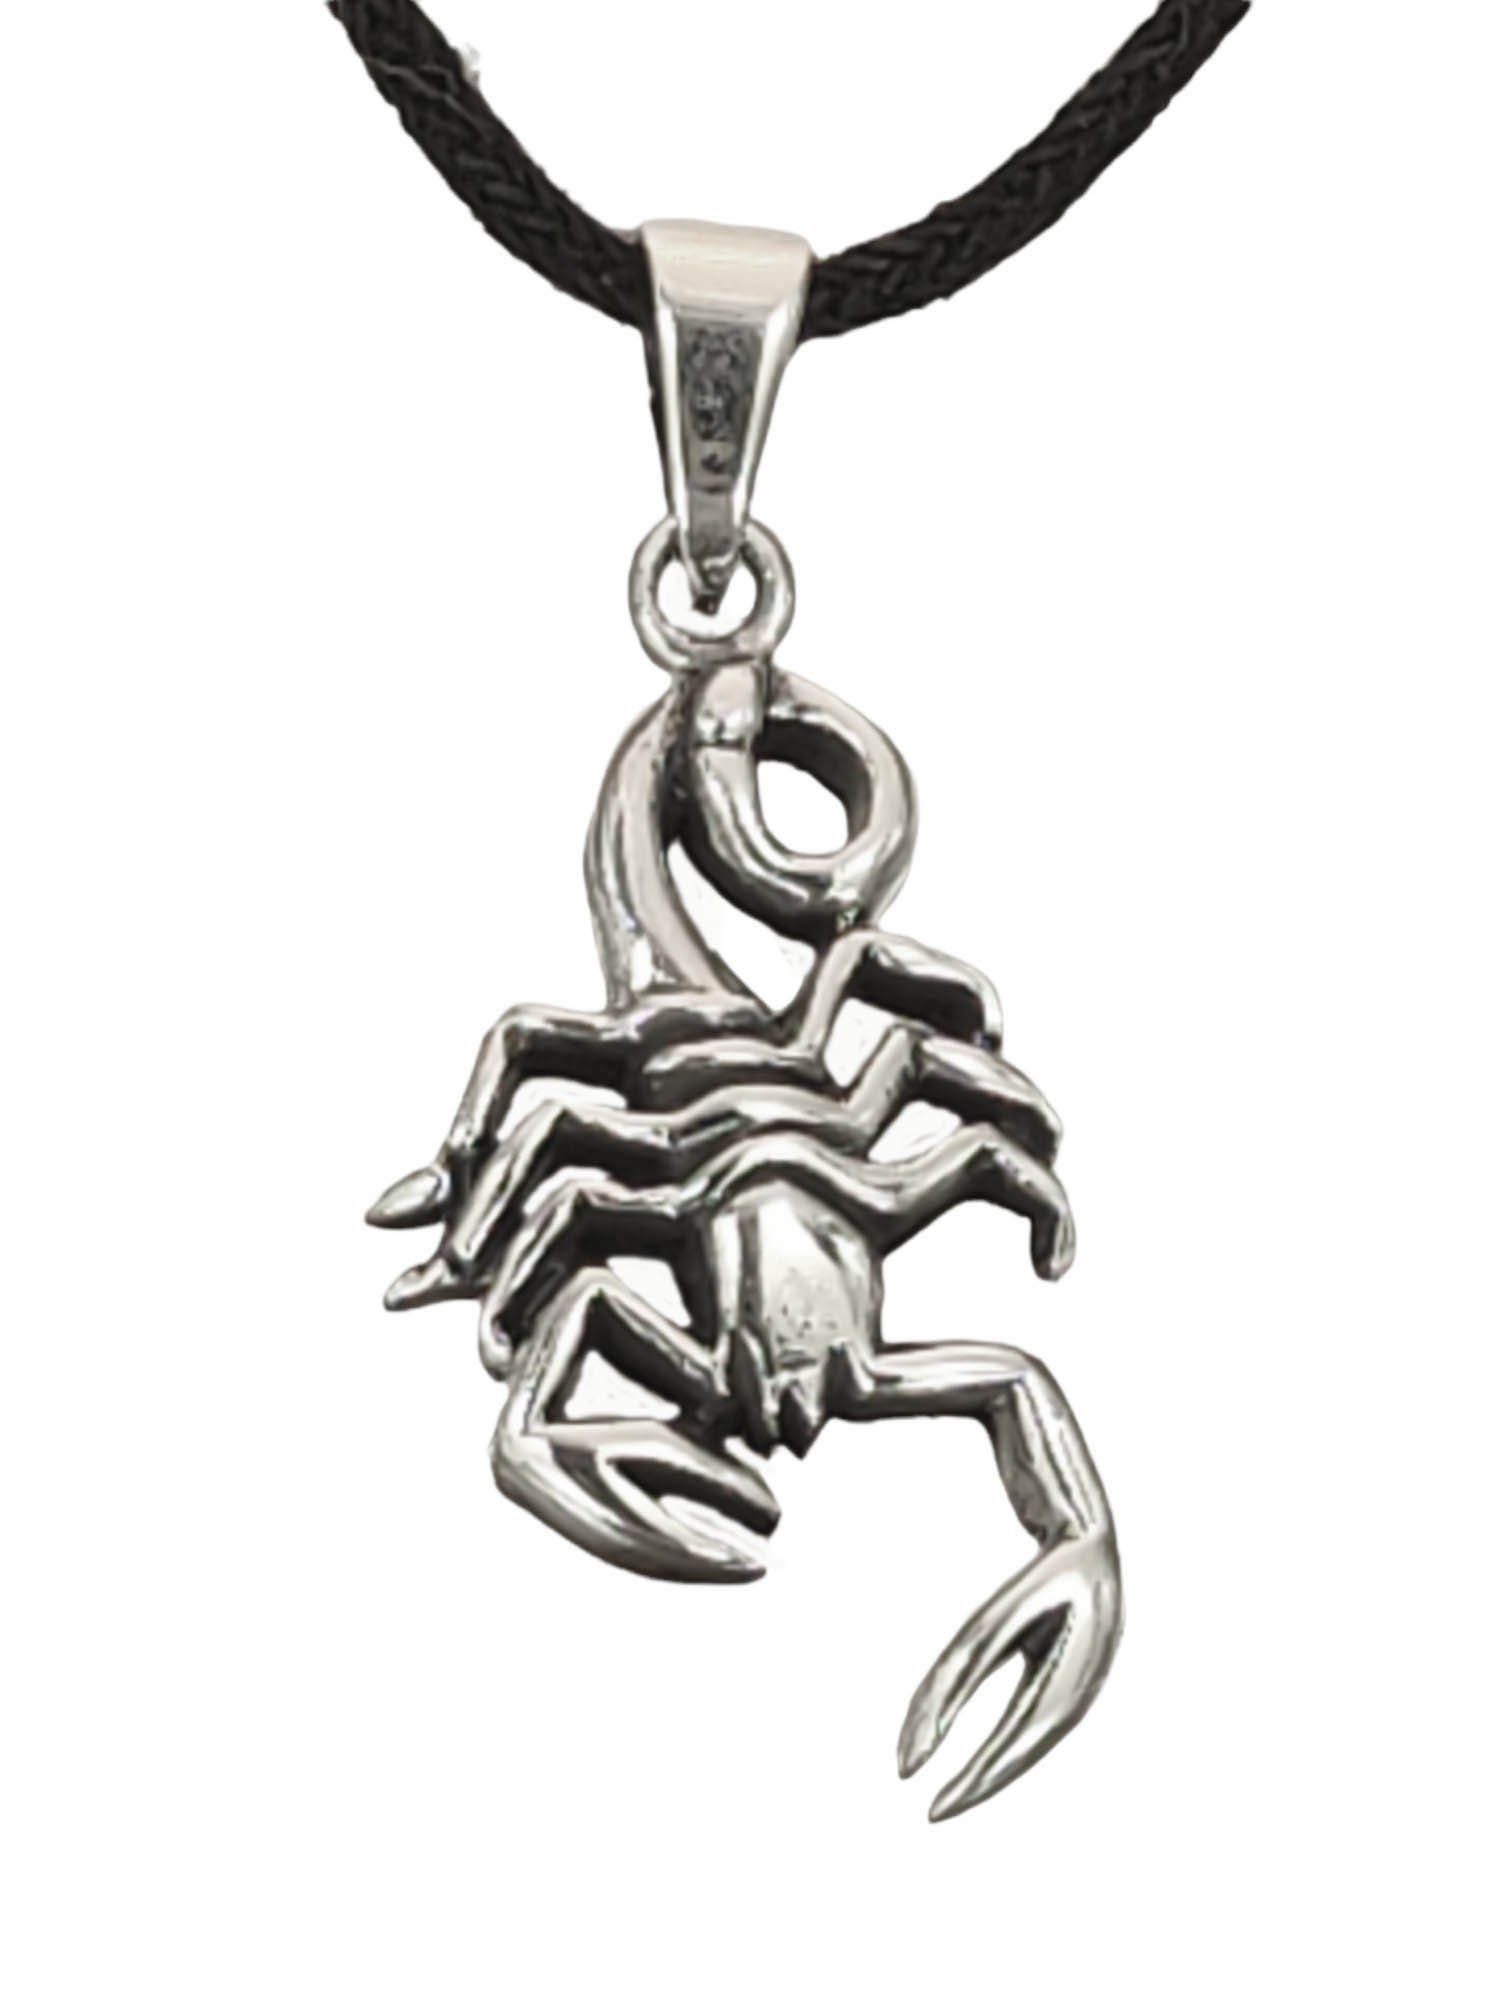 Kettenanhänger Kettenanhänger Kiss Skorpion Sterling Nr.433 Anhänger Leather Silber 925 aus of